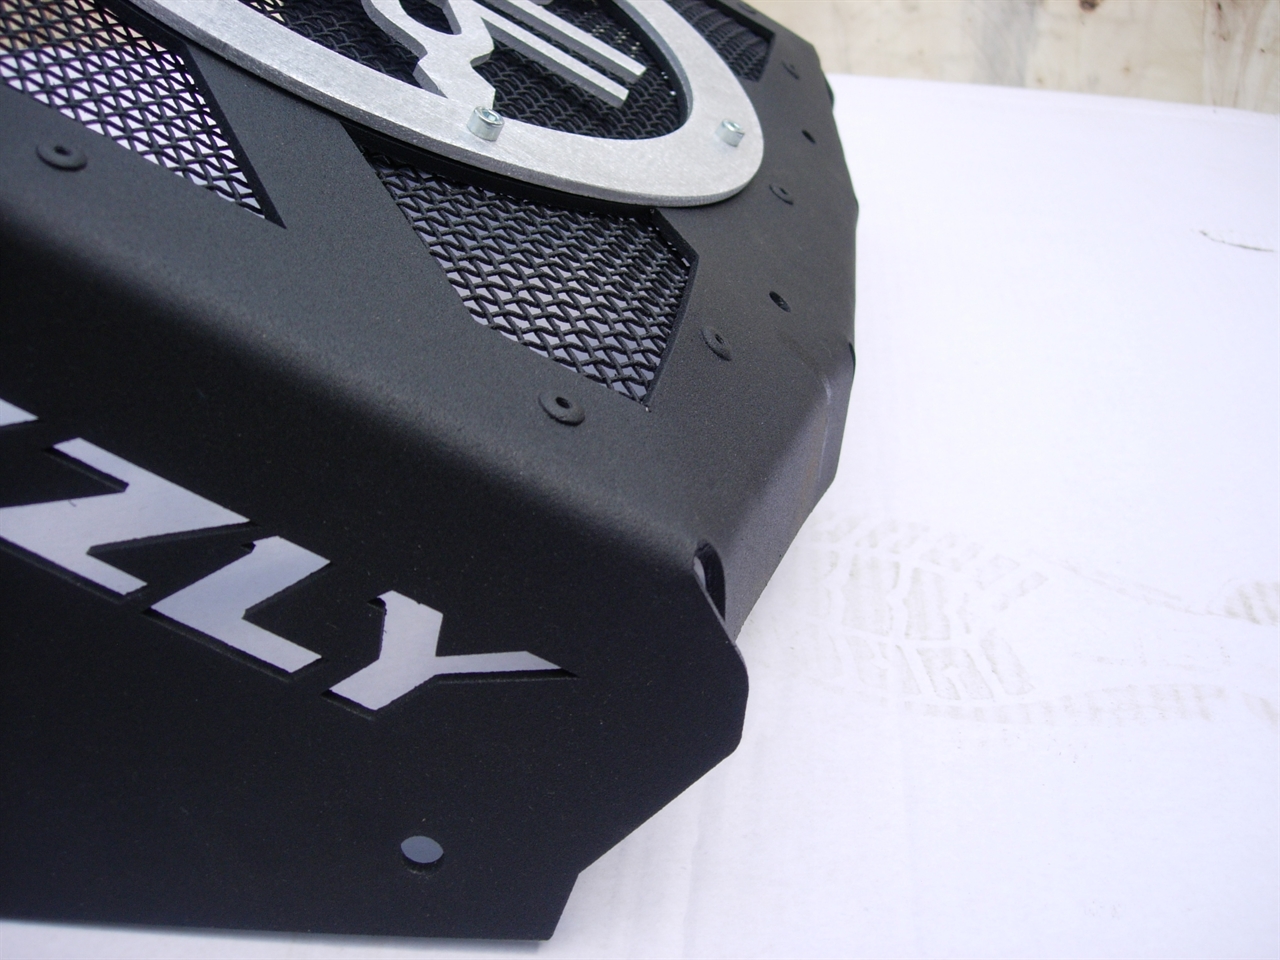 картинка Комплект выноса радиатора для Yamaha Grizzly 550/700 Litpro серебро, алюминиевый